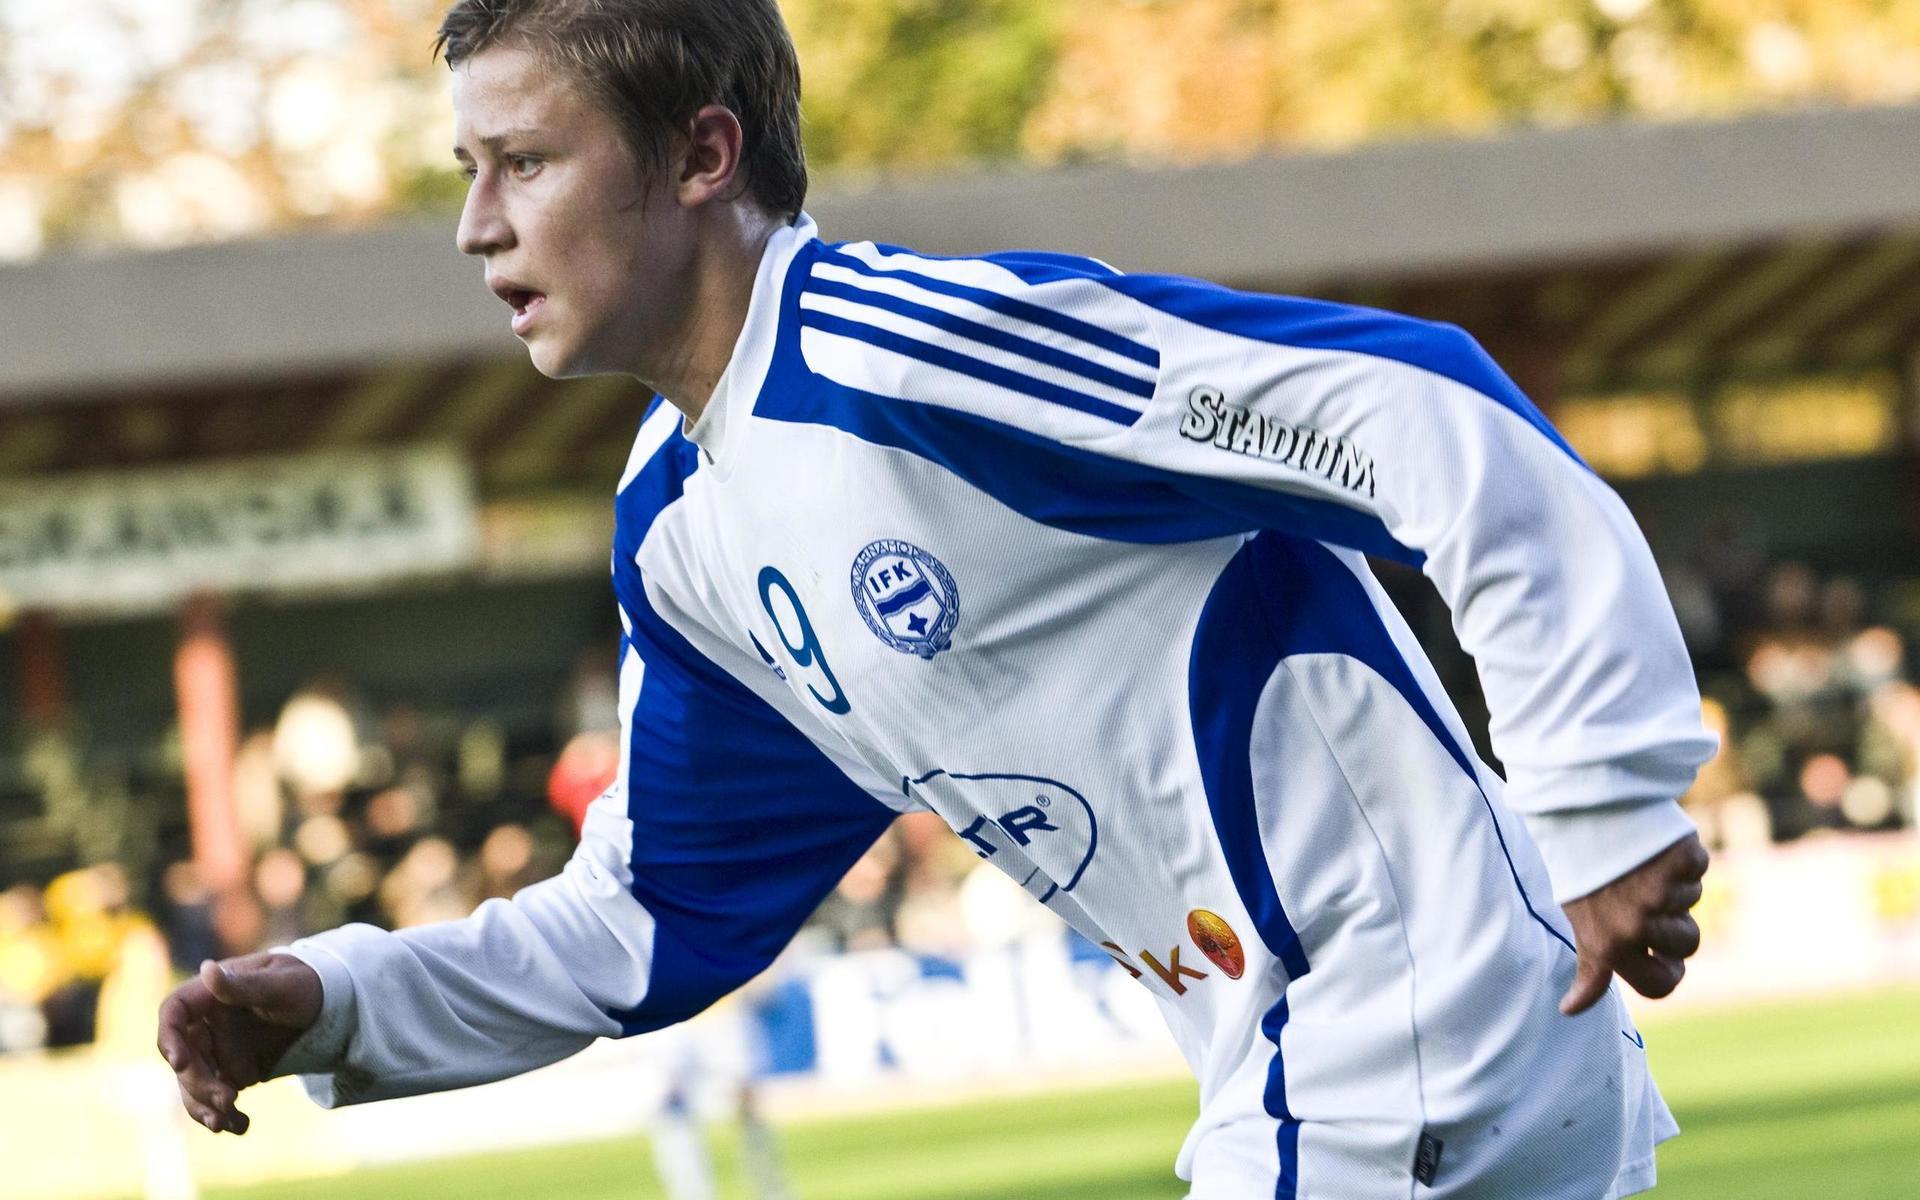 Simon Thern fick sin fostran i IFK Värnamo, med vilka han debuterade som 16-åring i division 1. 